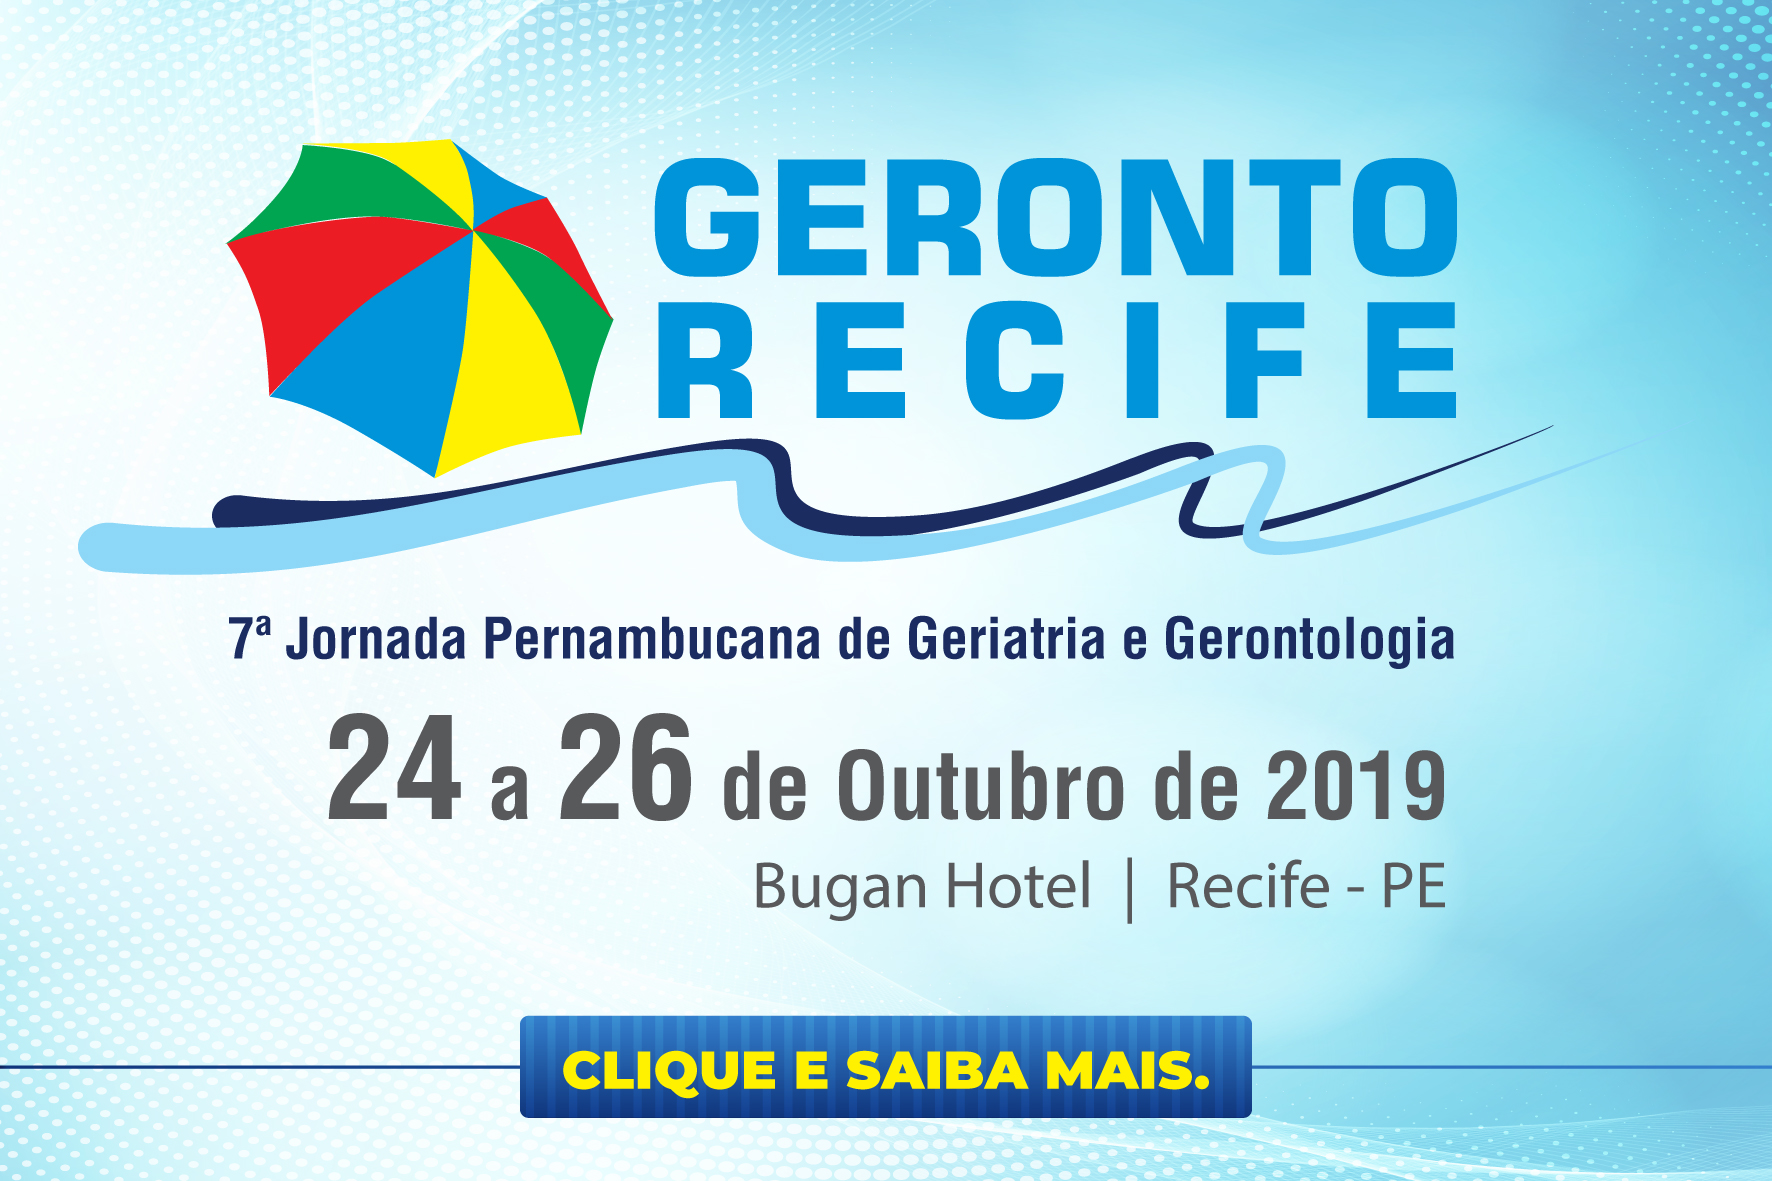 Recife Geronto